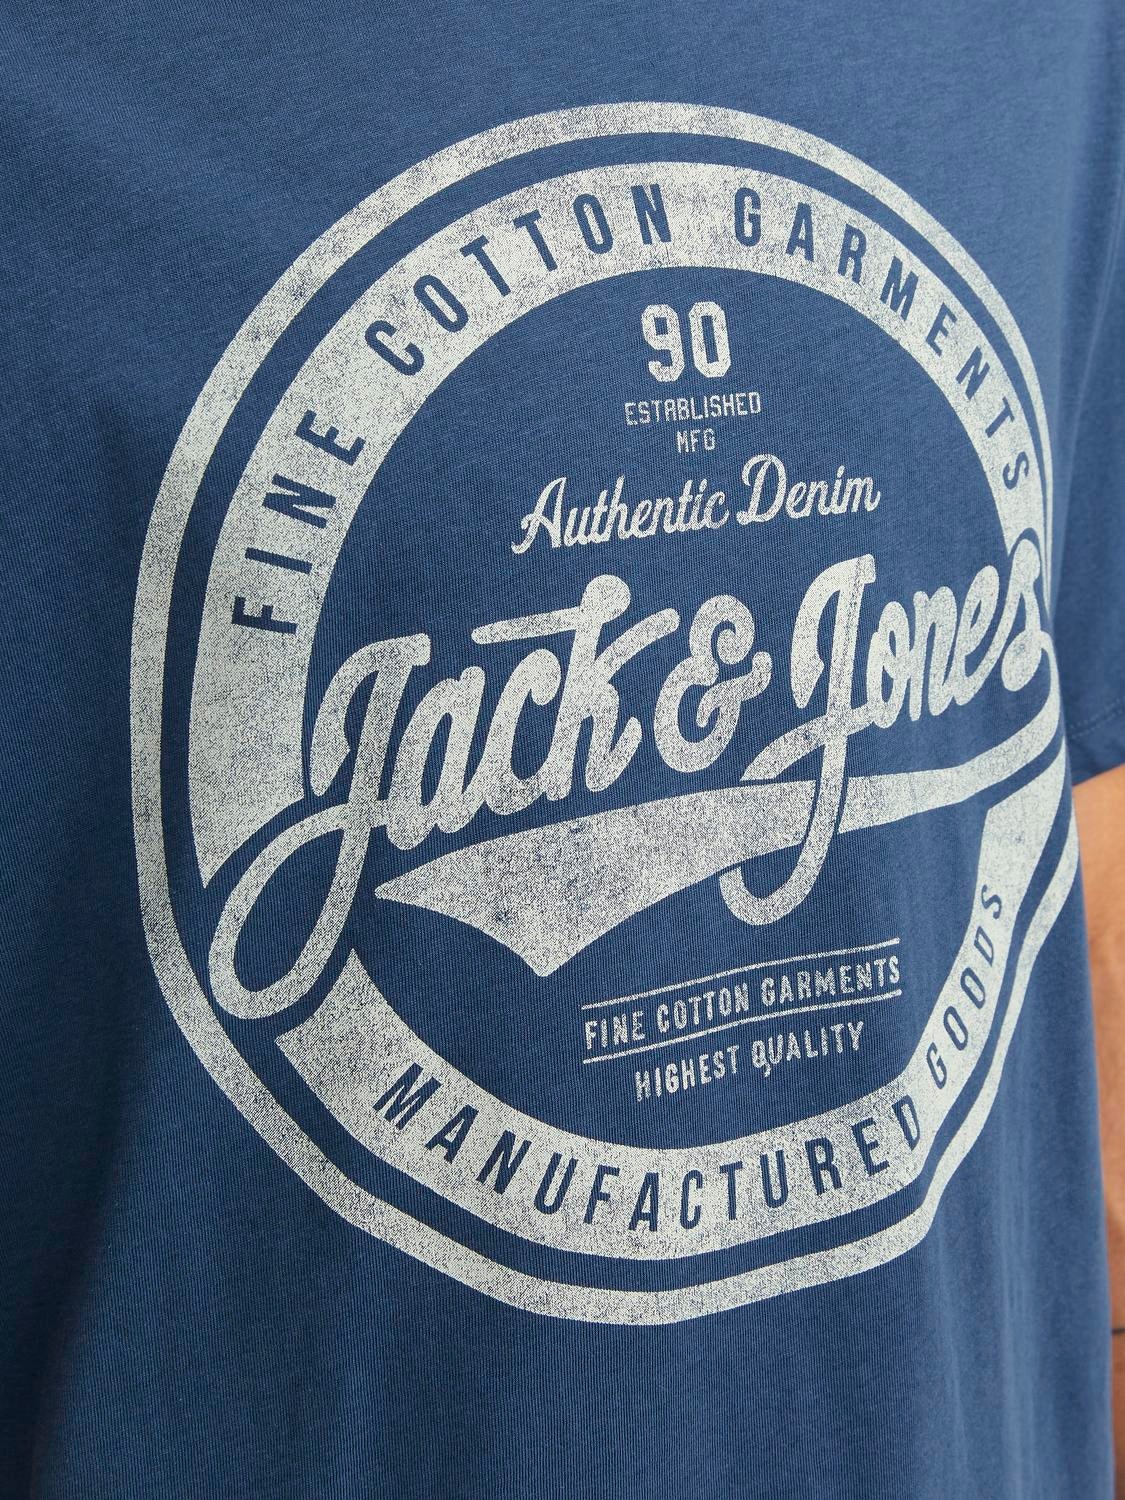 Jack & Jones T-shirt Con logo Girocollo -Ensign Blue - 12232972